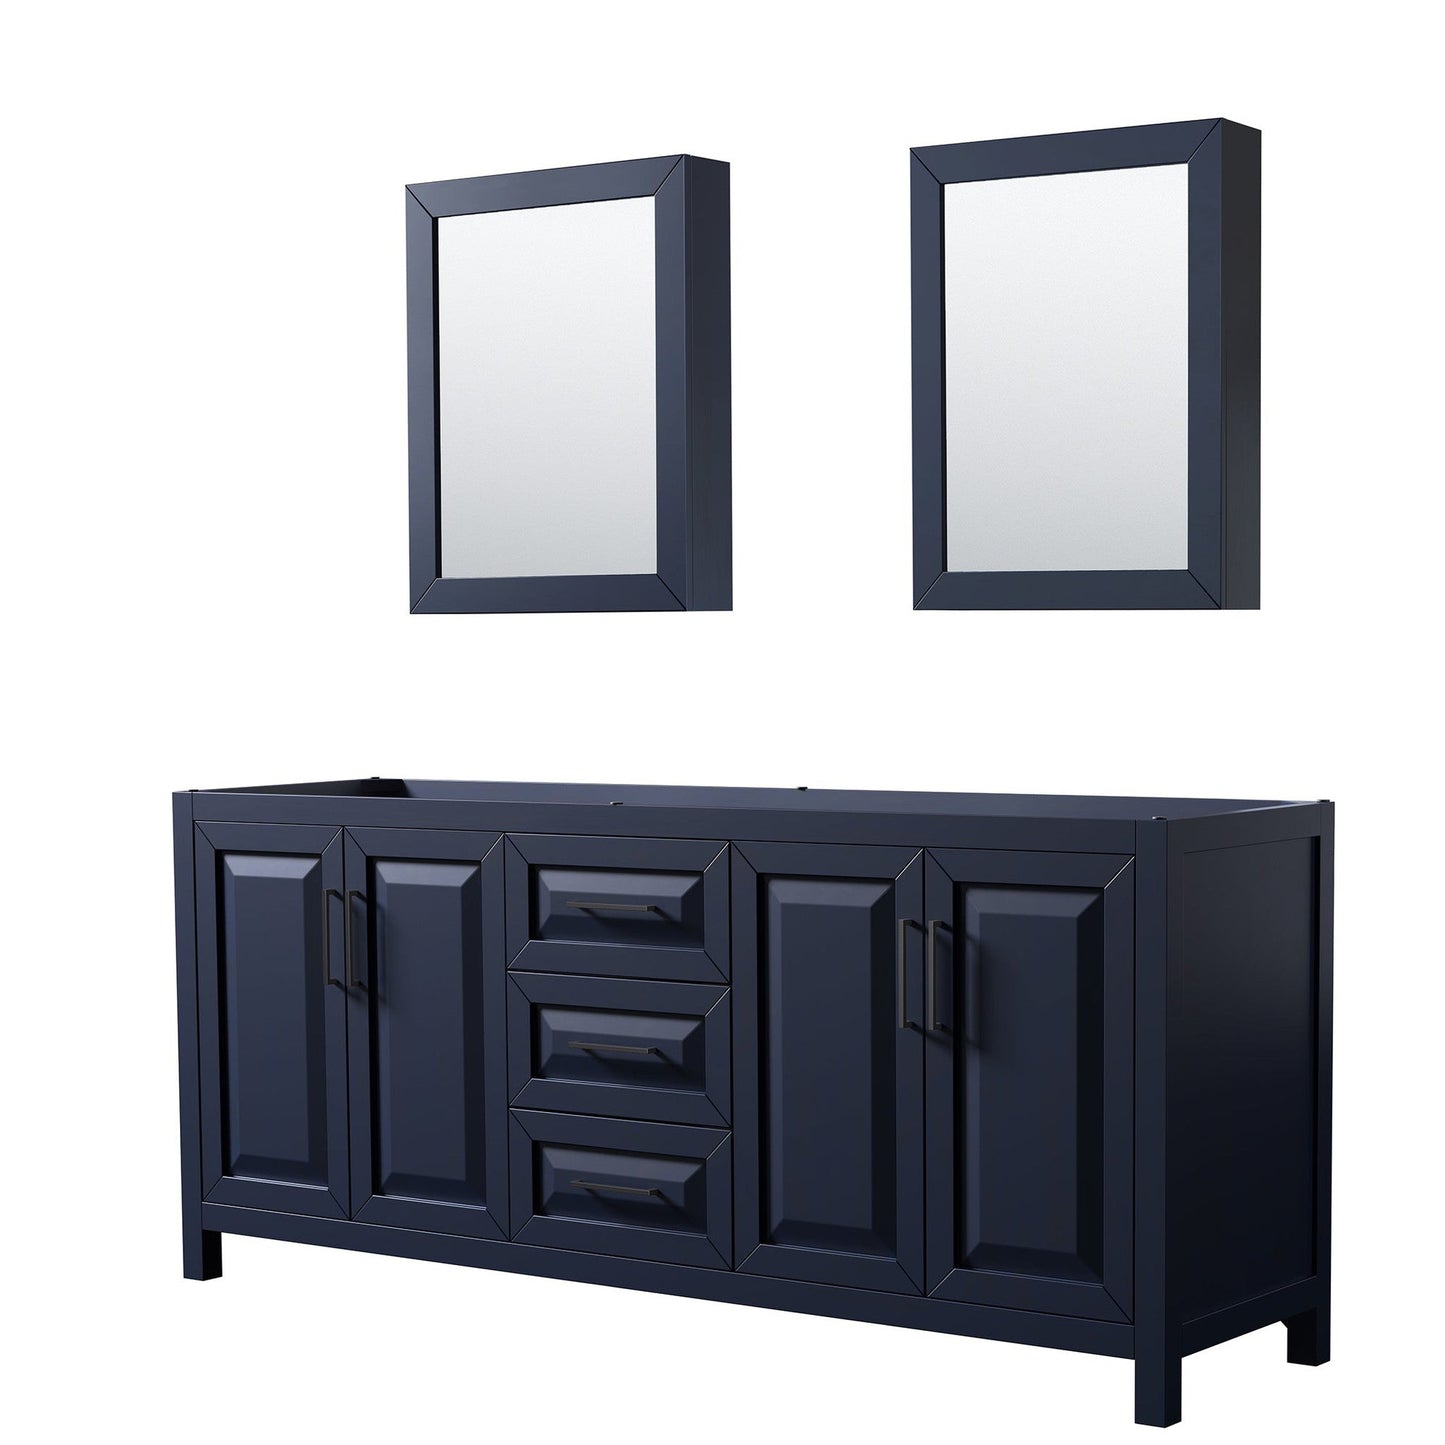 Daria 80" Double Bathroom Vanity in Dark Blue, No Countertop, No Sink, Matte Black Trim, Medicine Cabinets